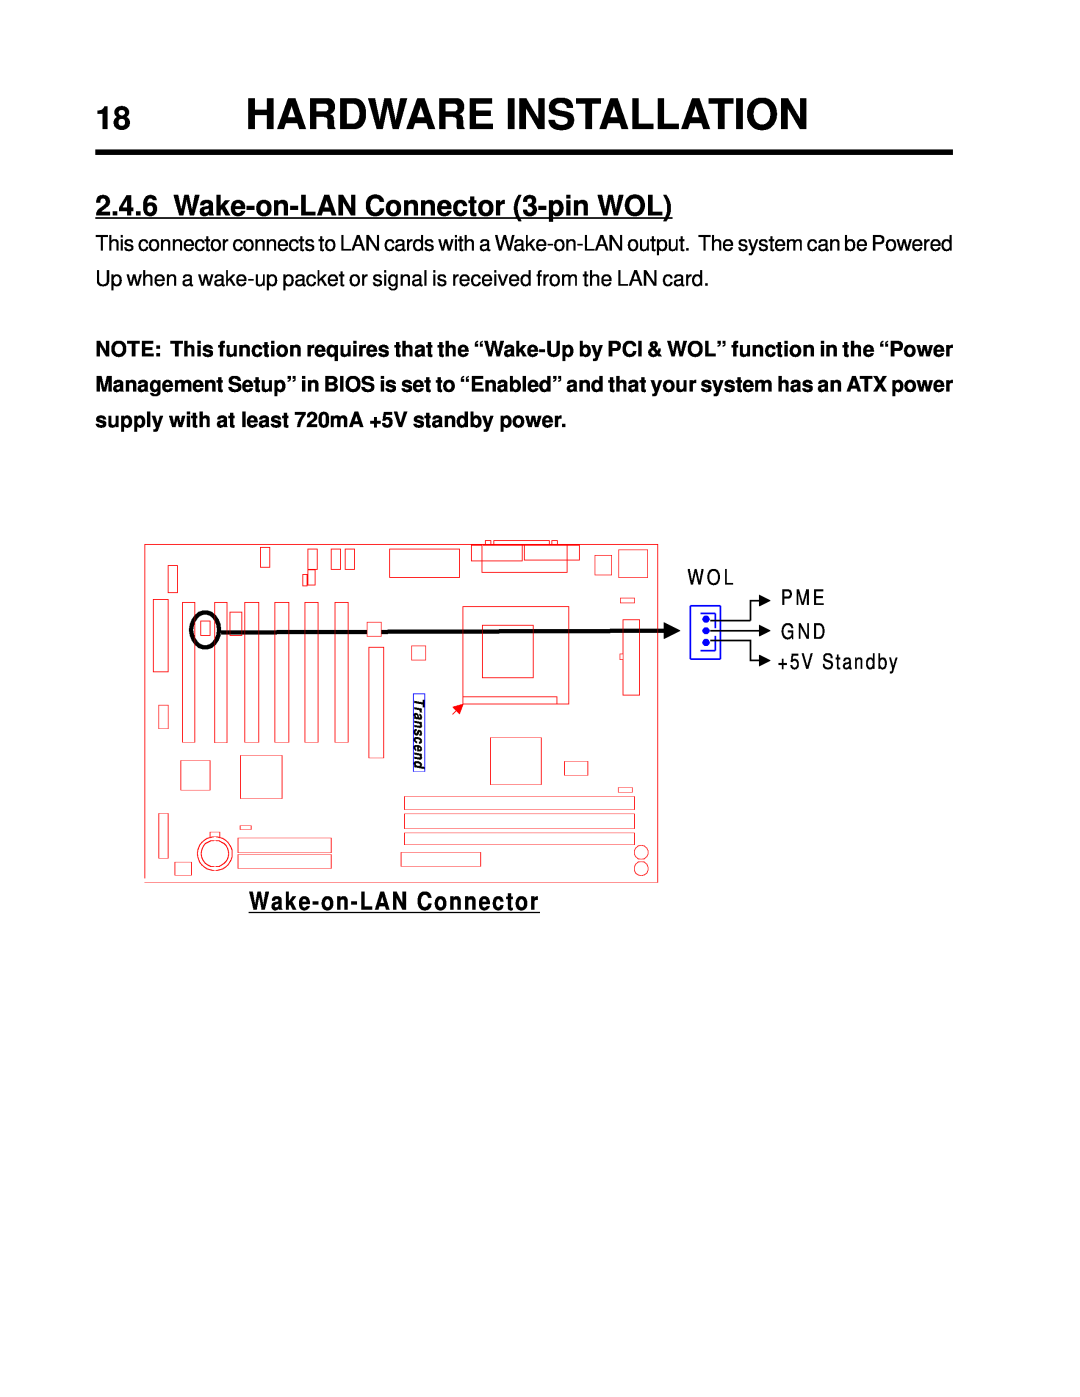 Intel TS-ASP3 user manual Hardware Installation, Wake-on-LANConnector 3-pinWOL 